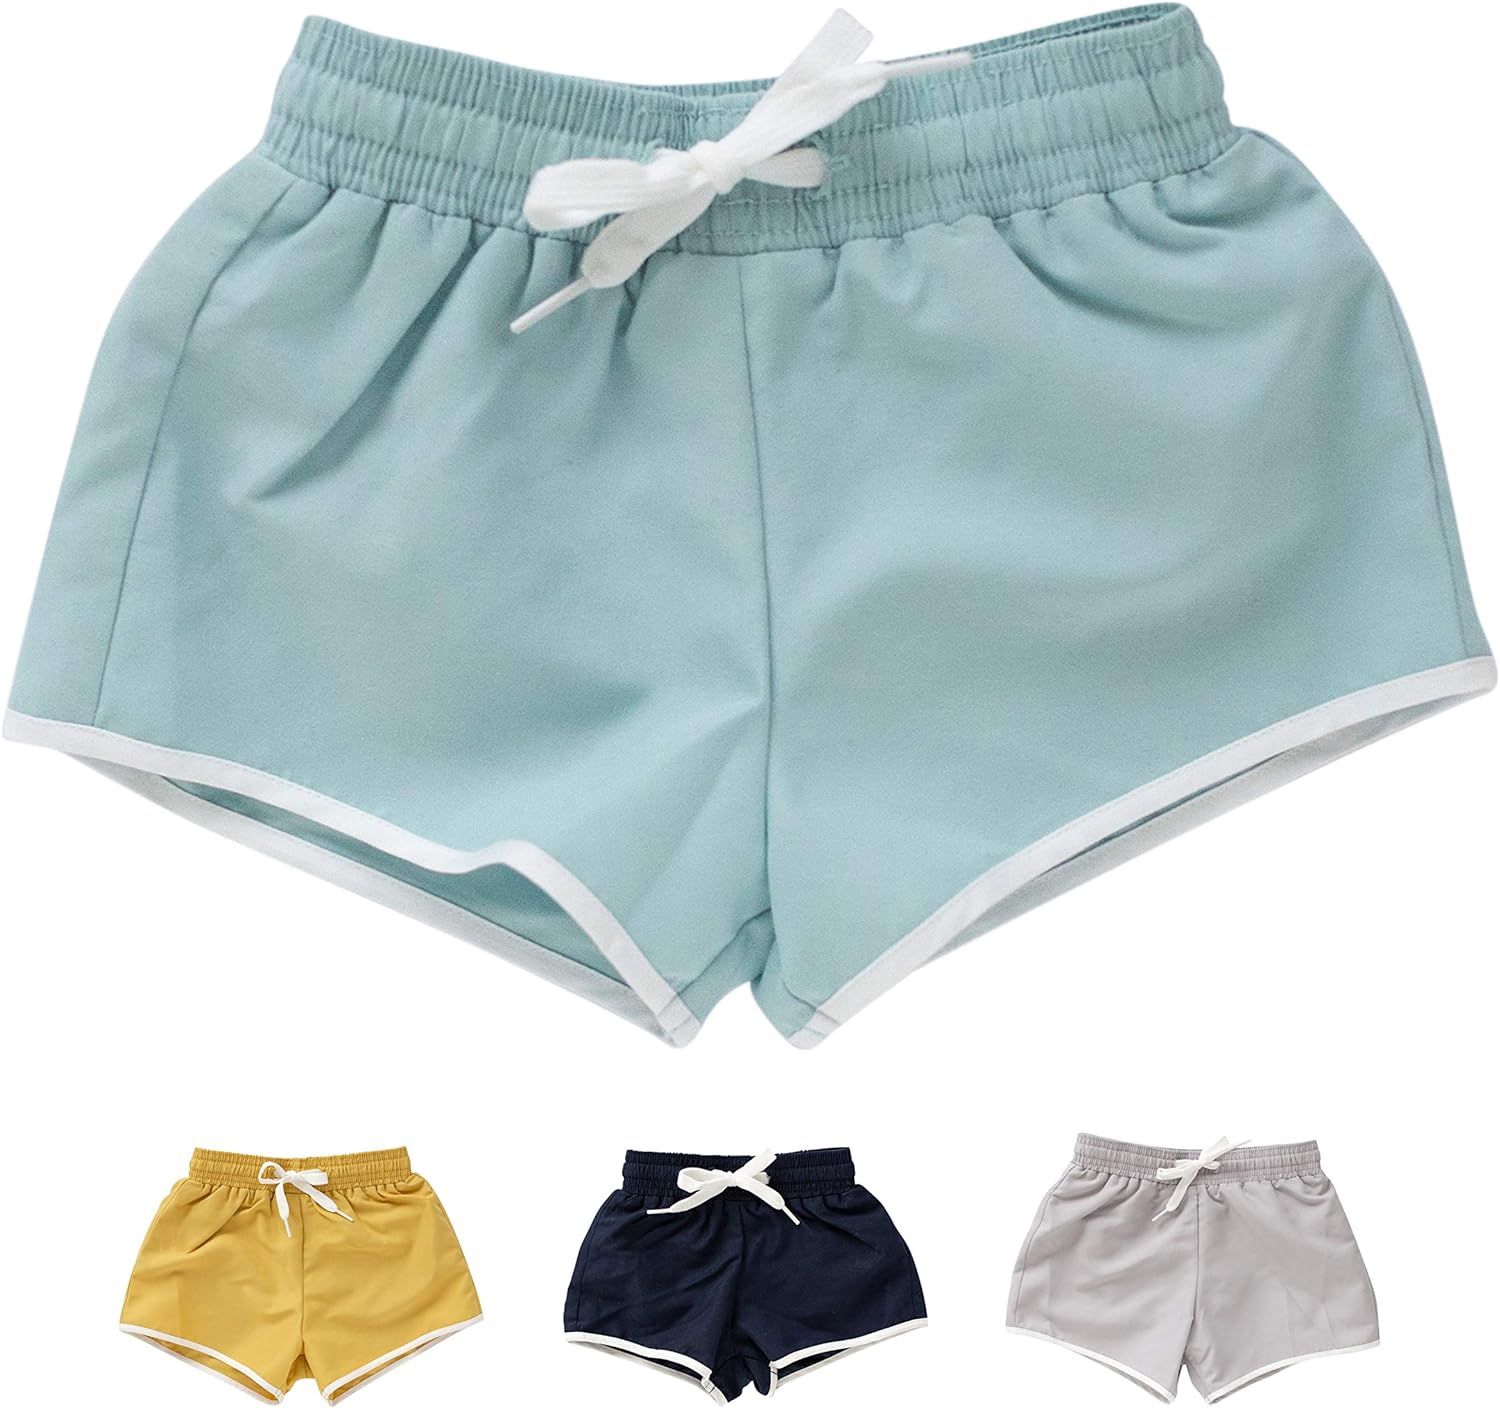 Sisterly Market Baby Toddler Boys Swimsuit, Short Swim Shorts with Elastic Waistband, Solid Swimw... | Amazon (US)